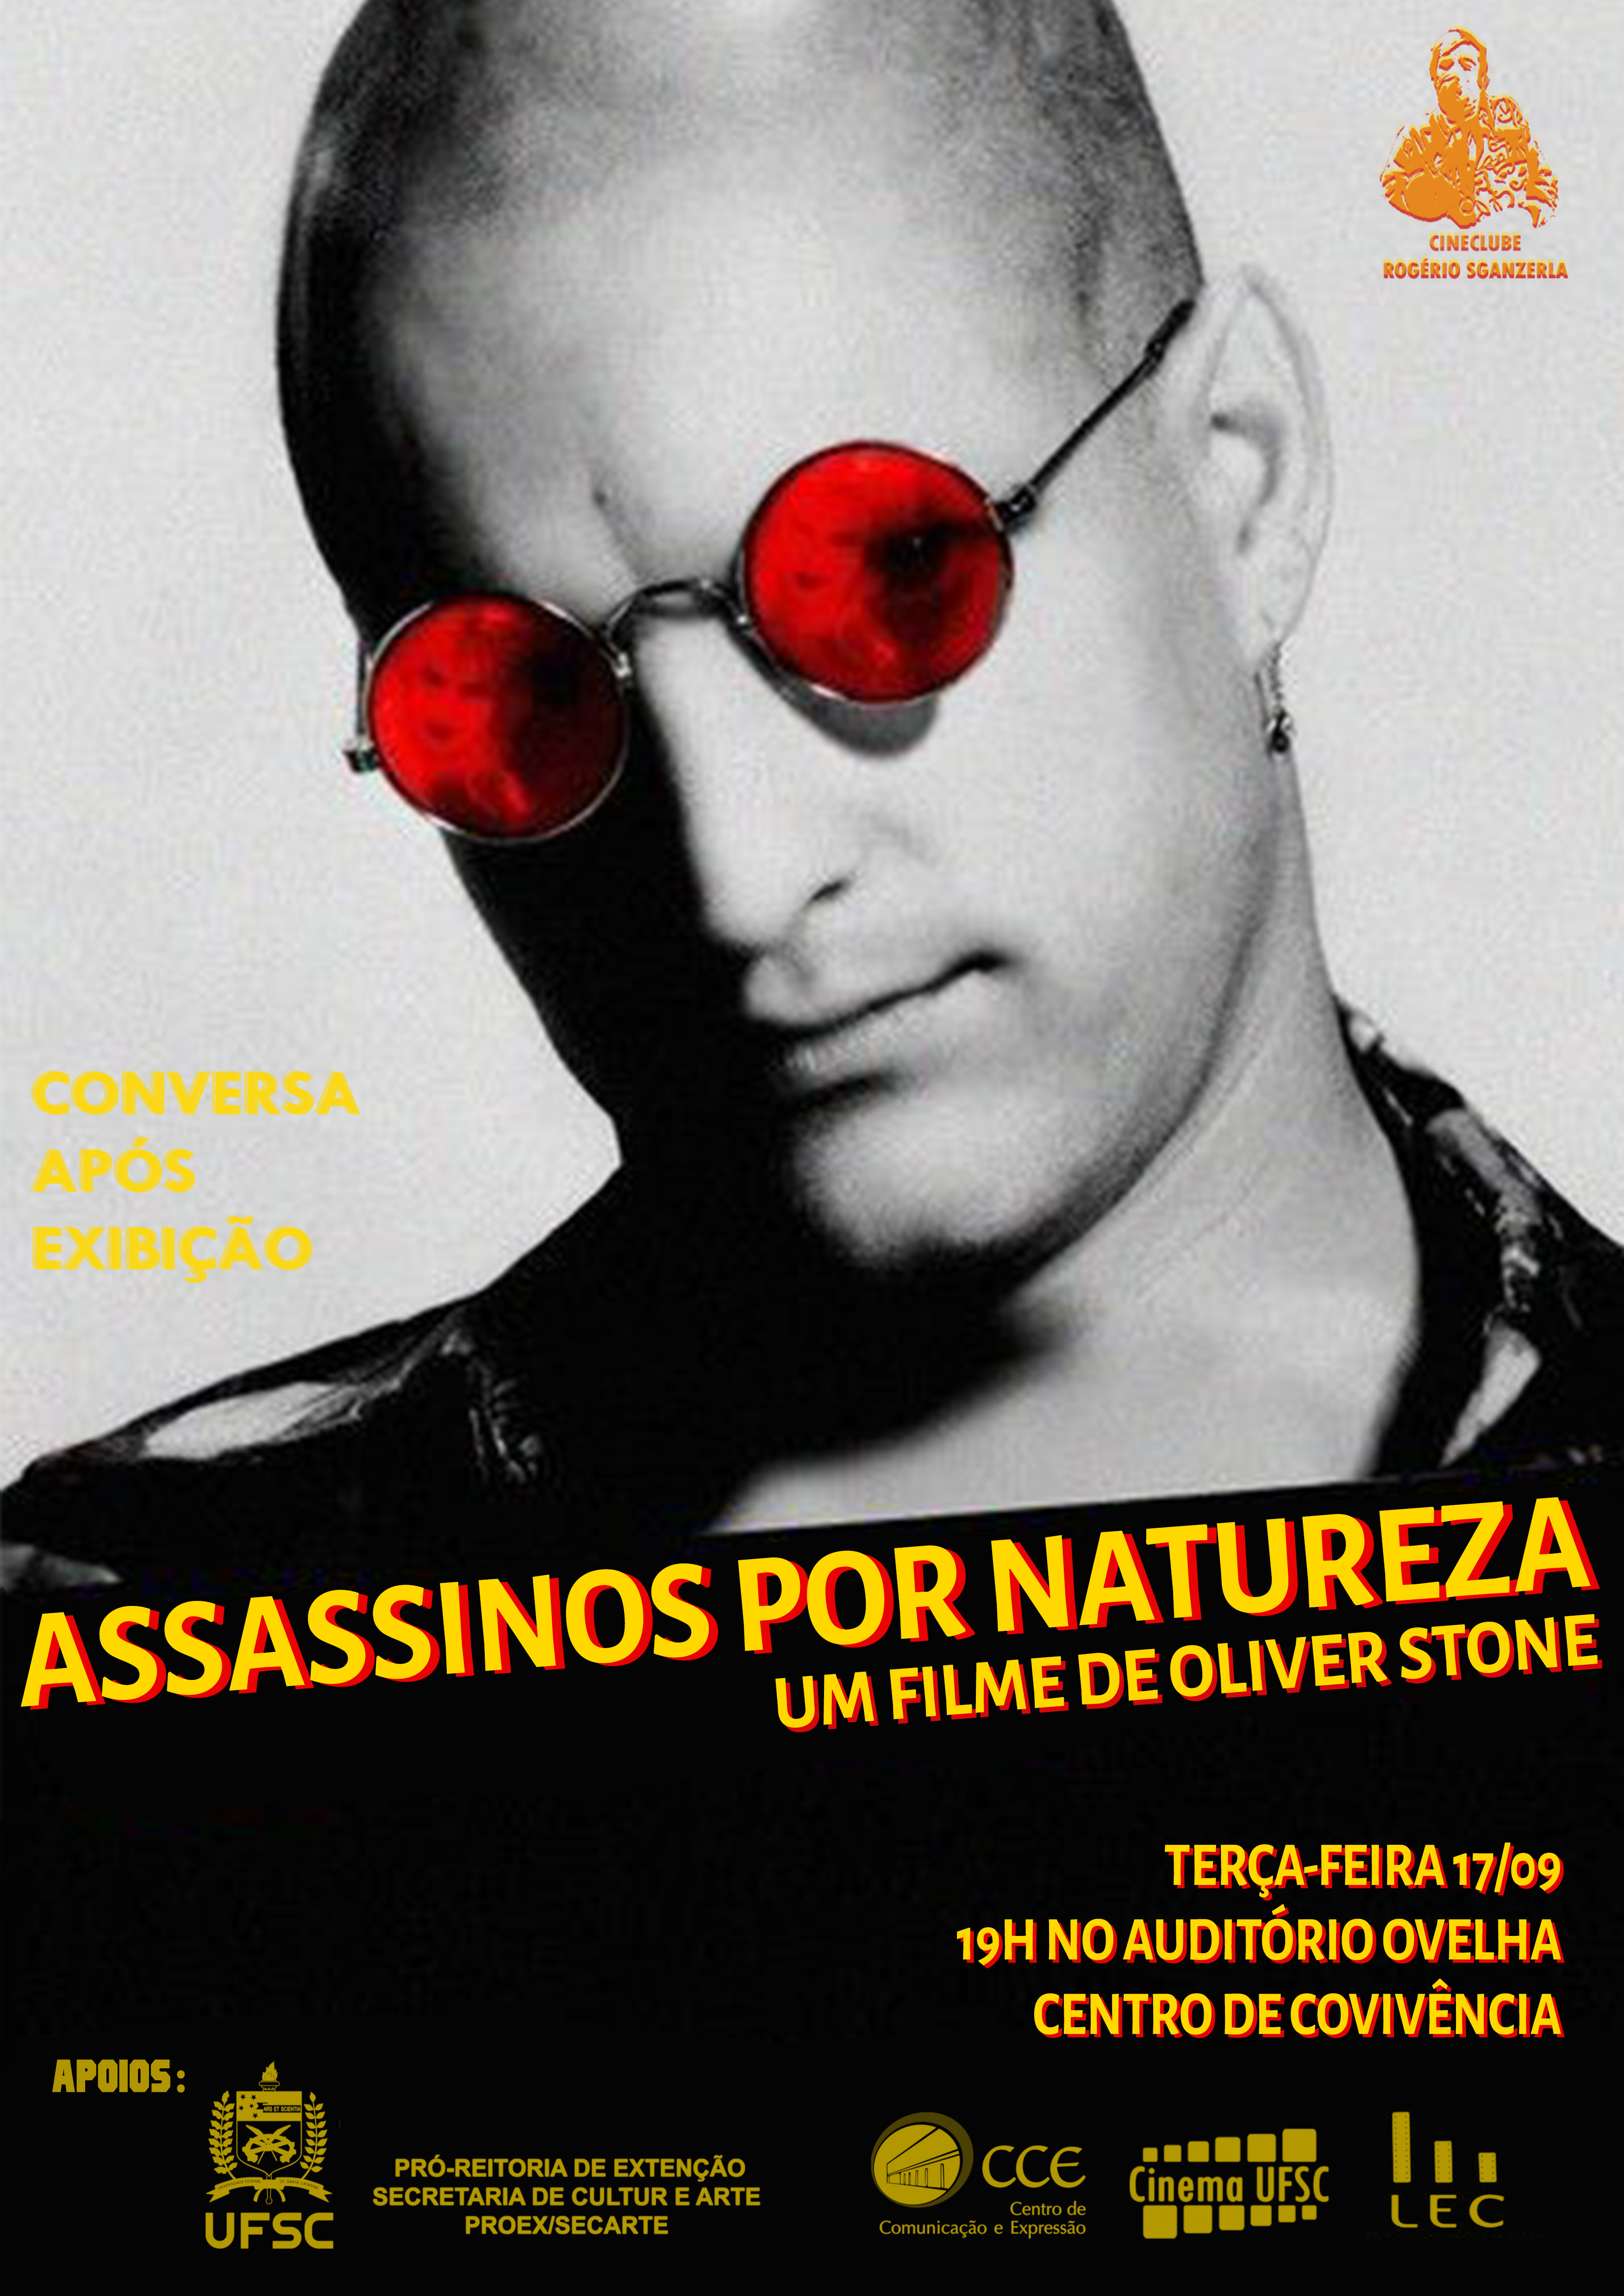 ASSASSINOS POR NATUREZA (1994)